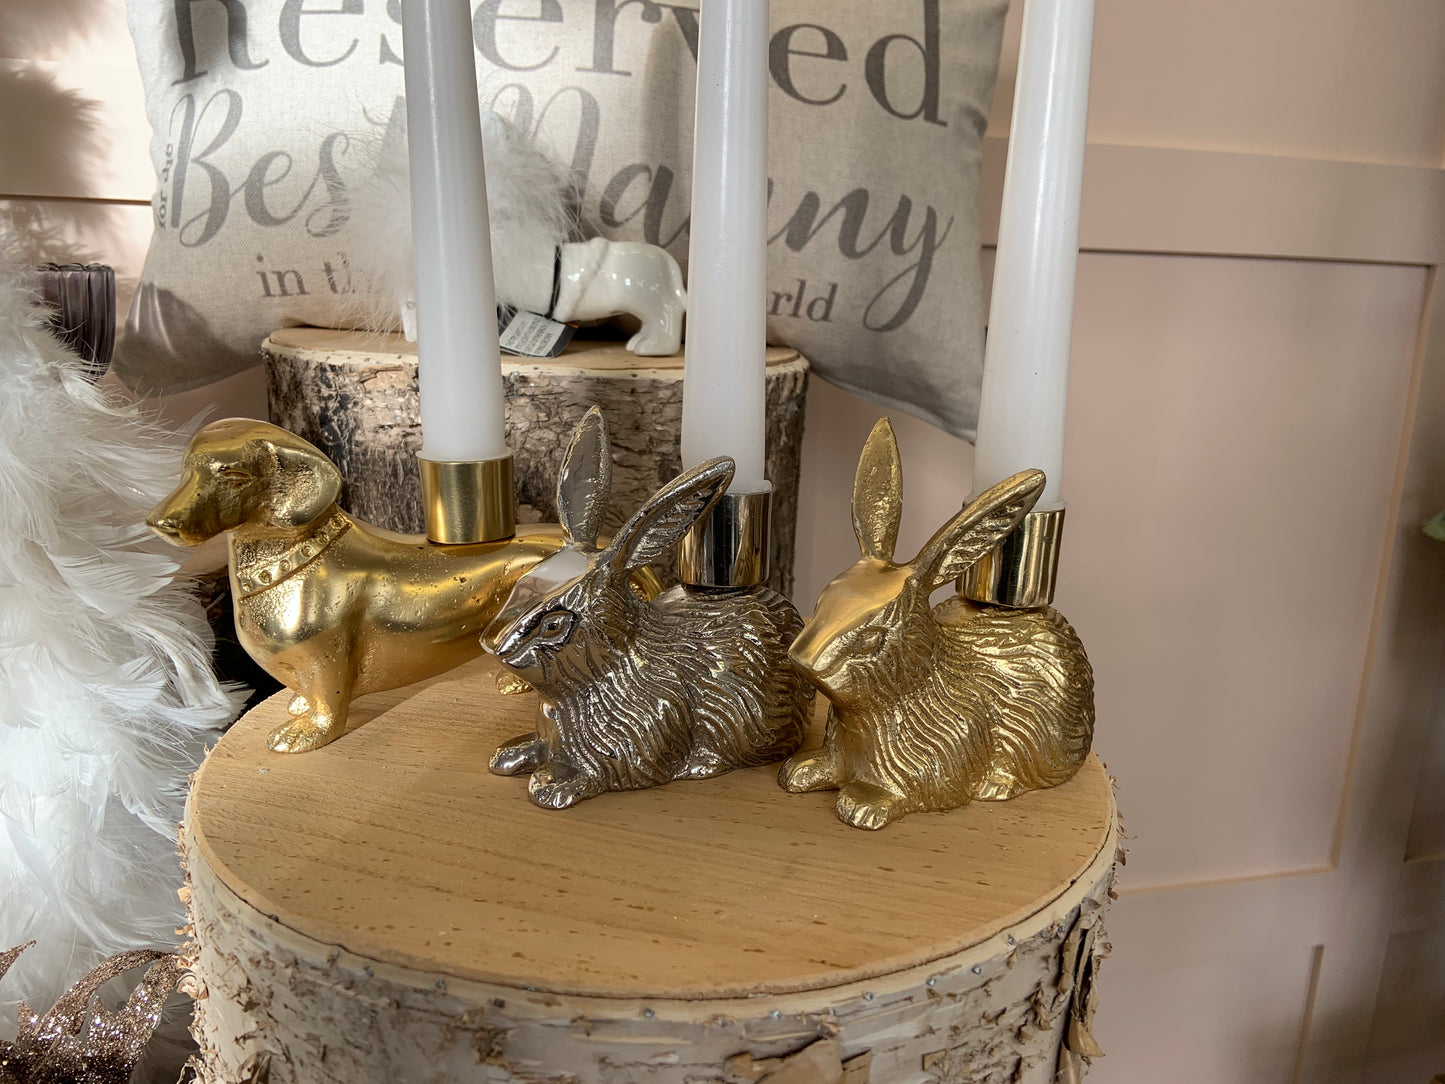 Bunny Rabbit Single Candle Holder - Shiny Gold Finish